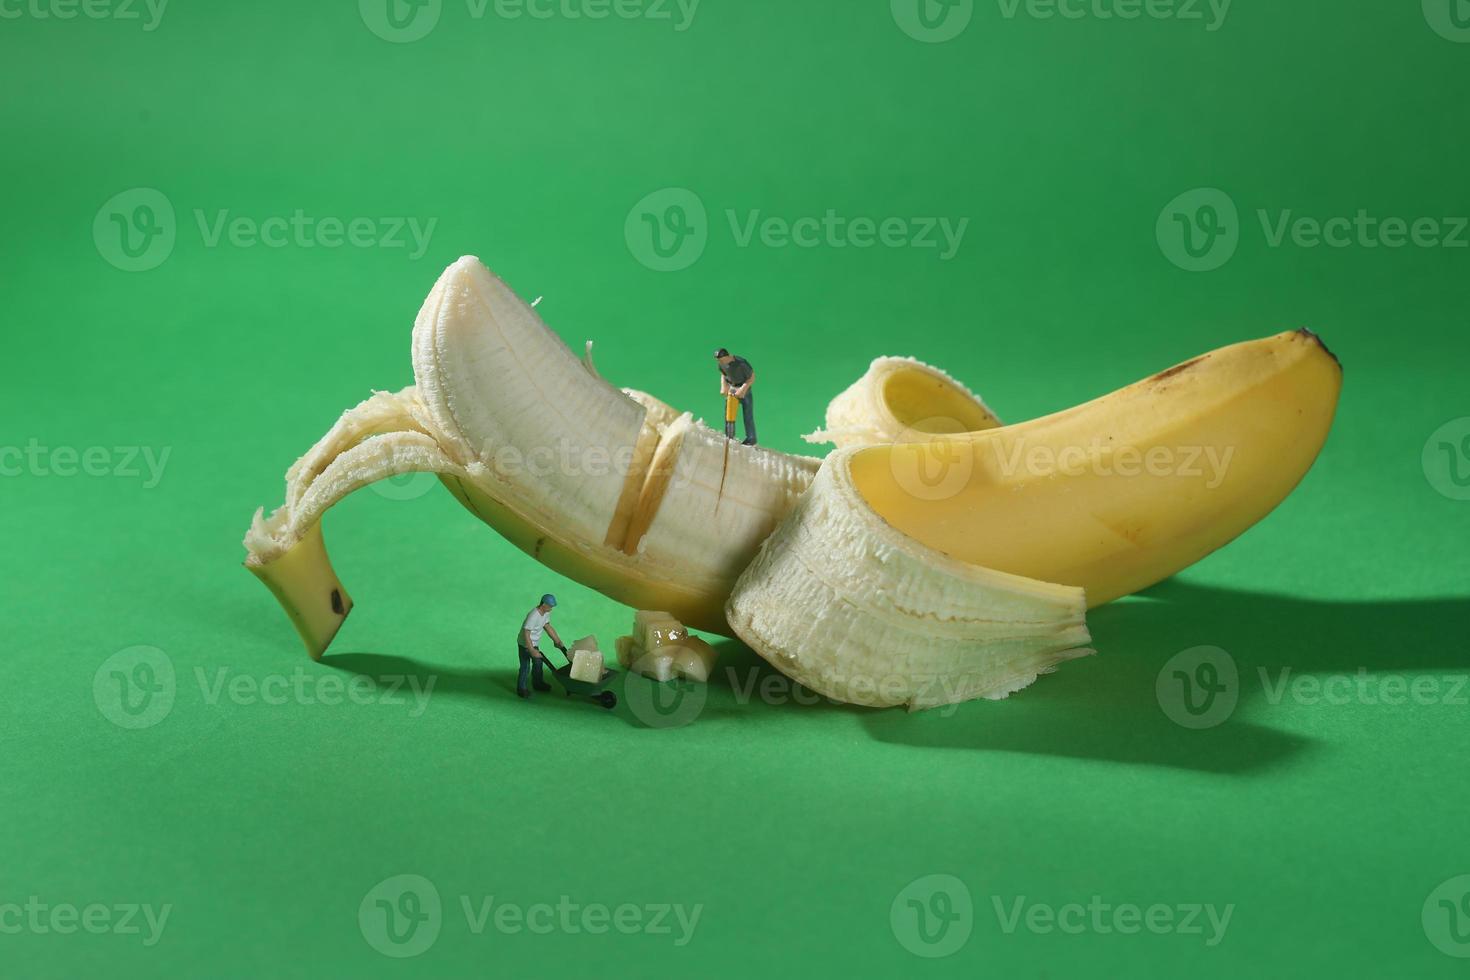 lavoratori edili in immagini alimentari concettuali con banana foto